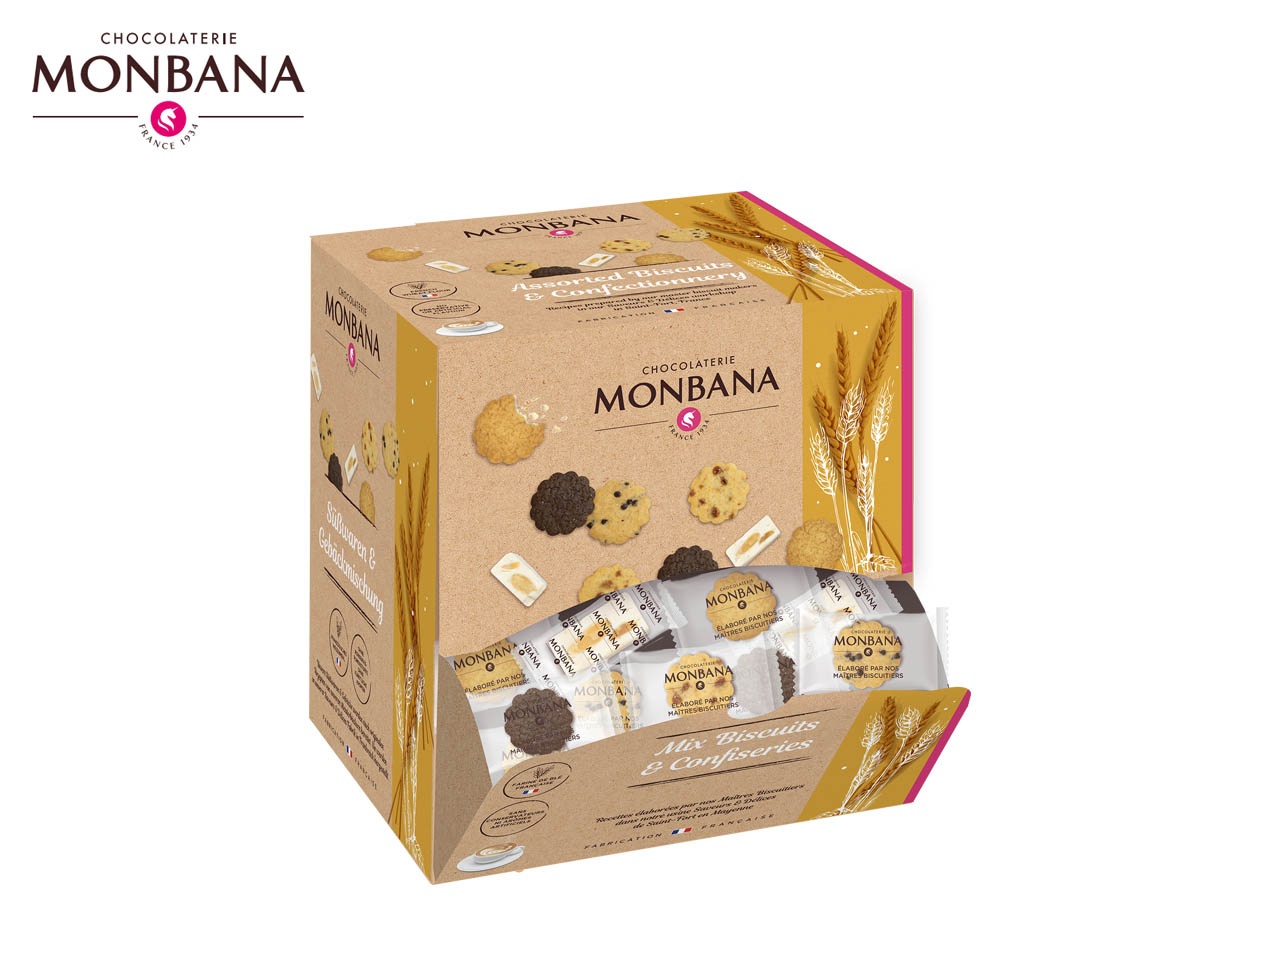 La chocolaterie MONBANA présente sa nouvelle box saisonnière